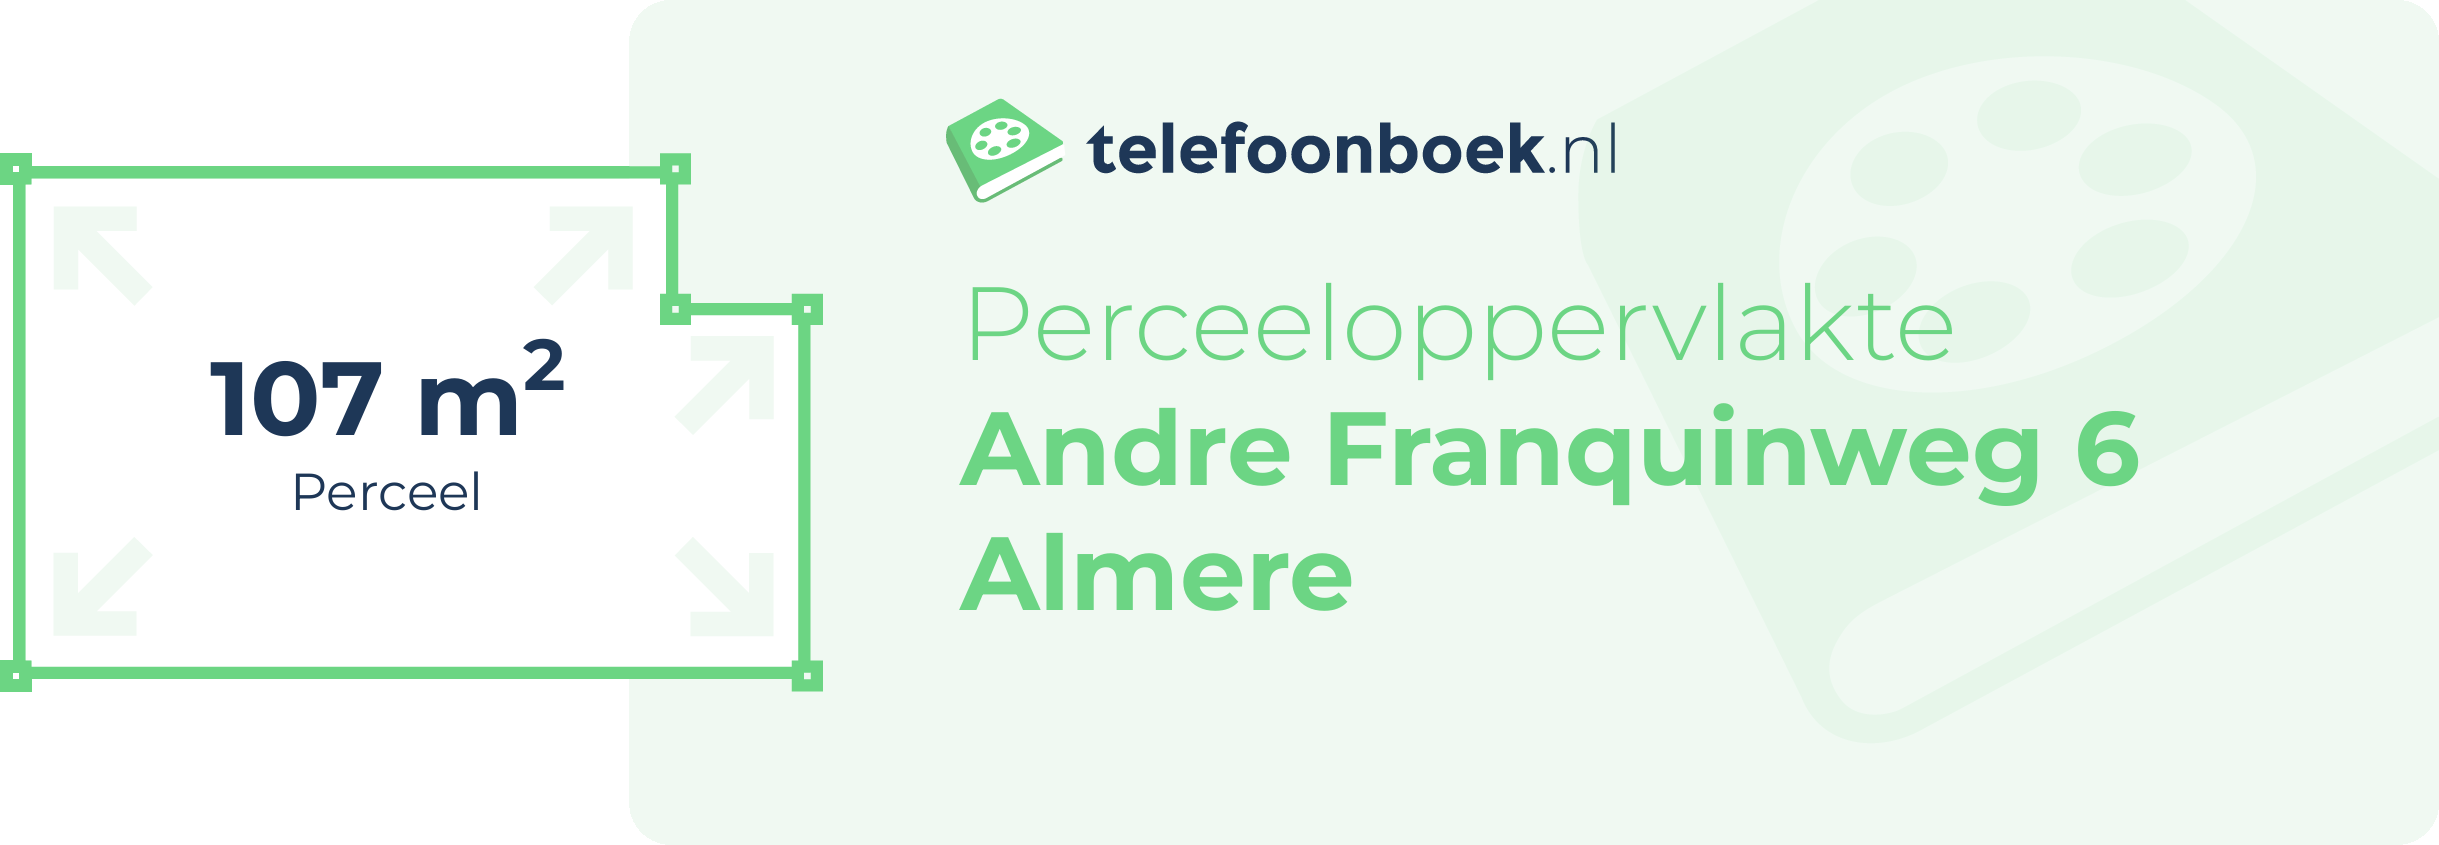 Perceeloppervlakte Andre Franquinweg 6 Almere